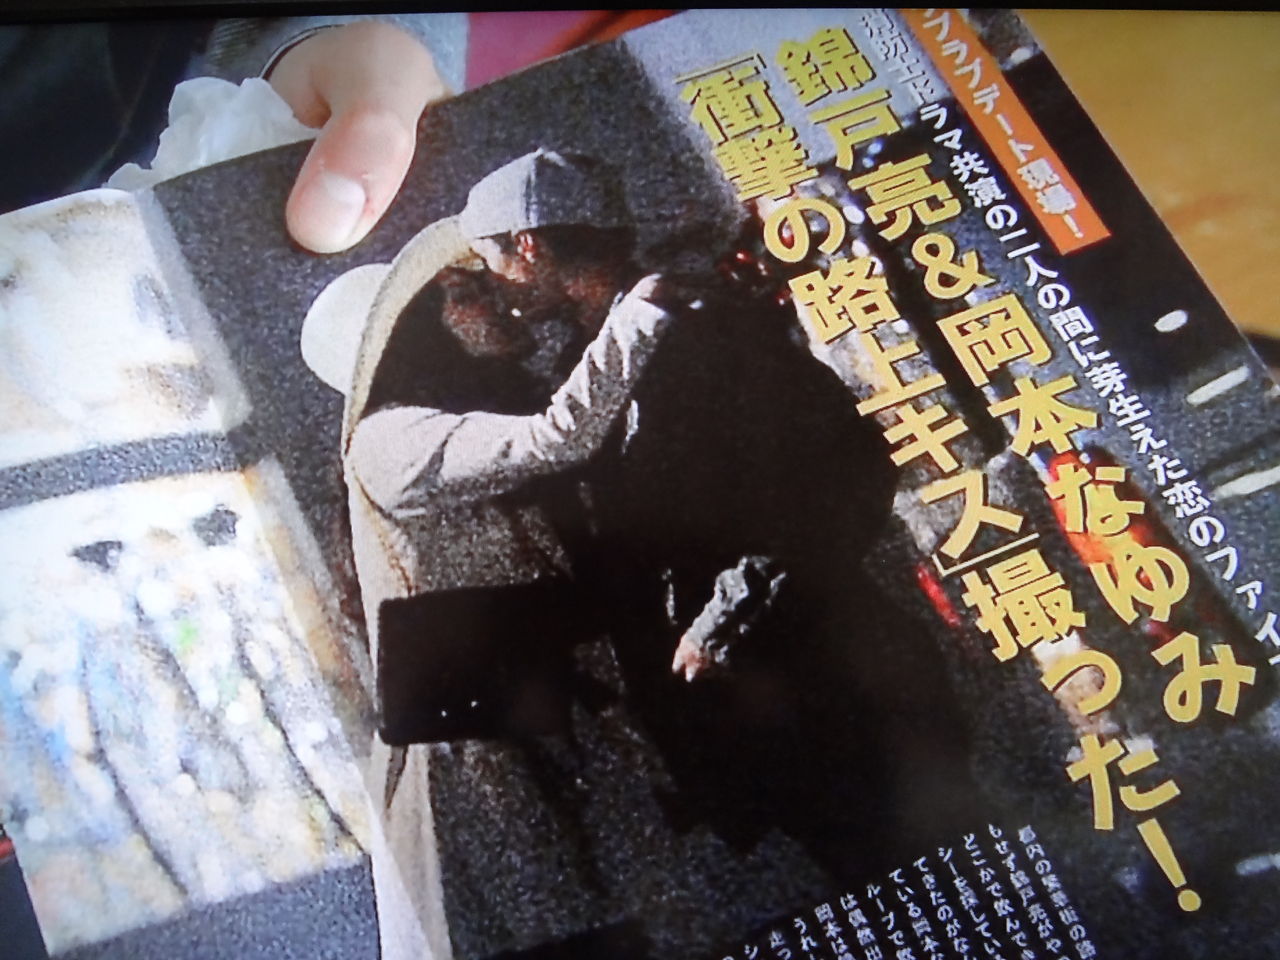 錦戸亮のベッド写真流出は3回目！錦戸の過去歴代週刊誌スキャンダル画像まとめ